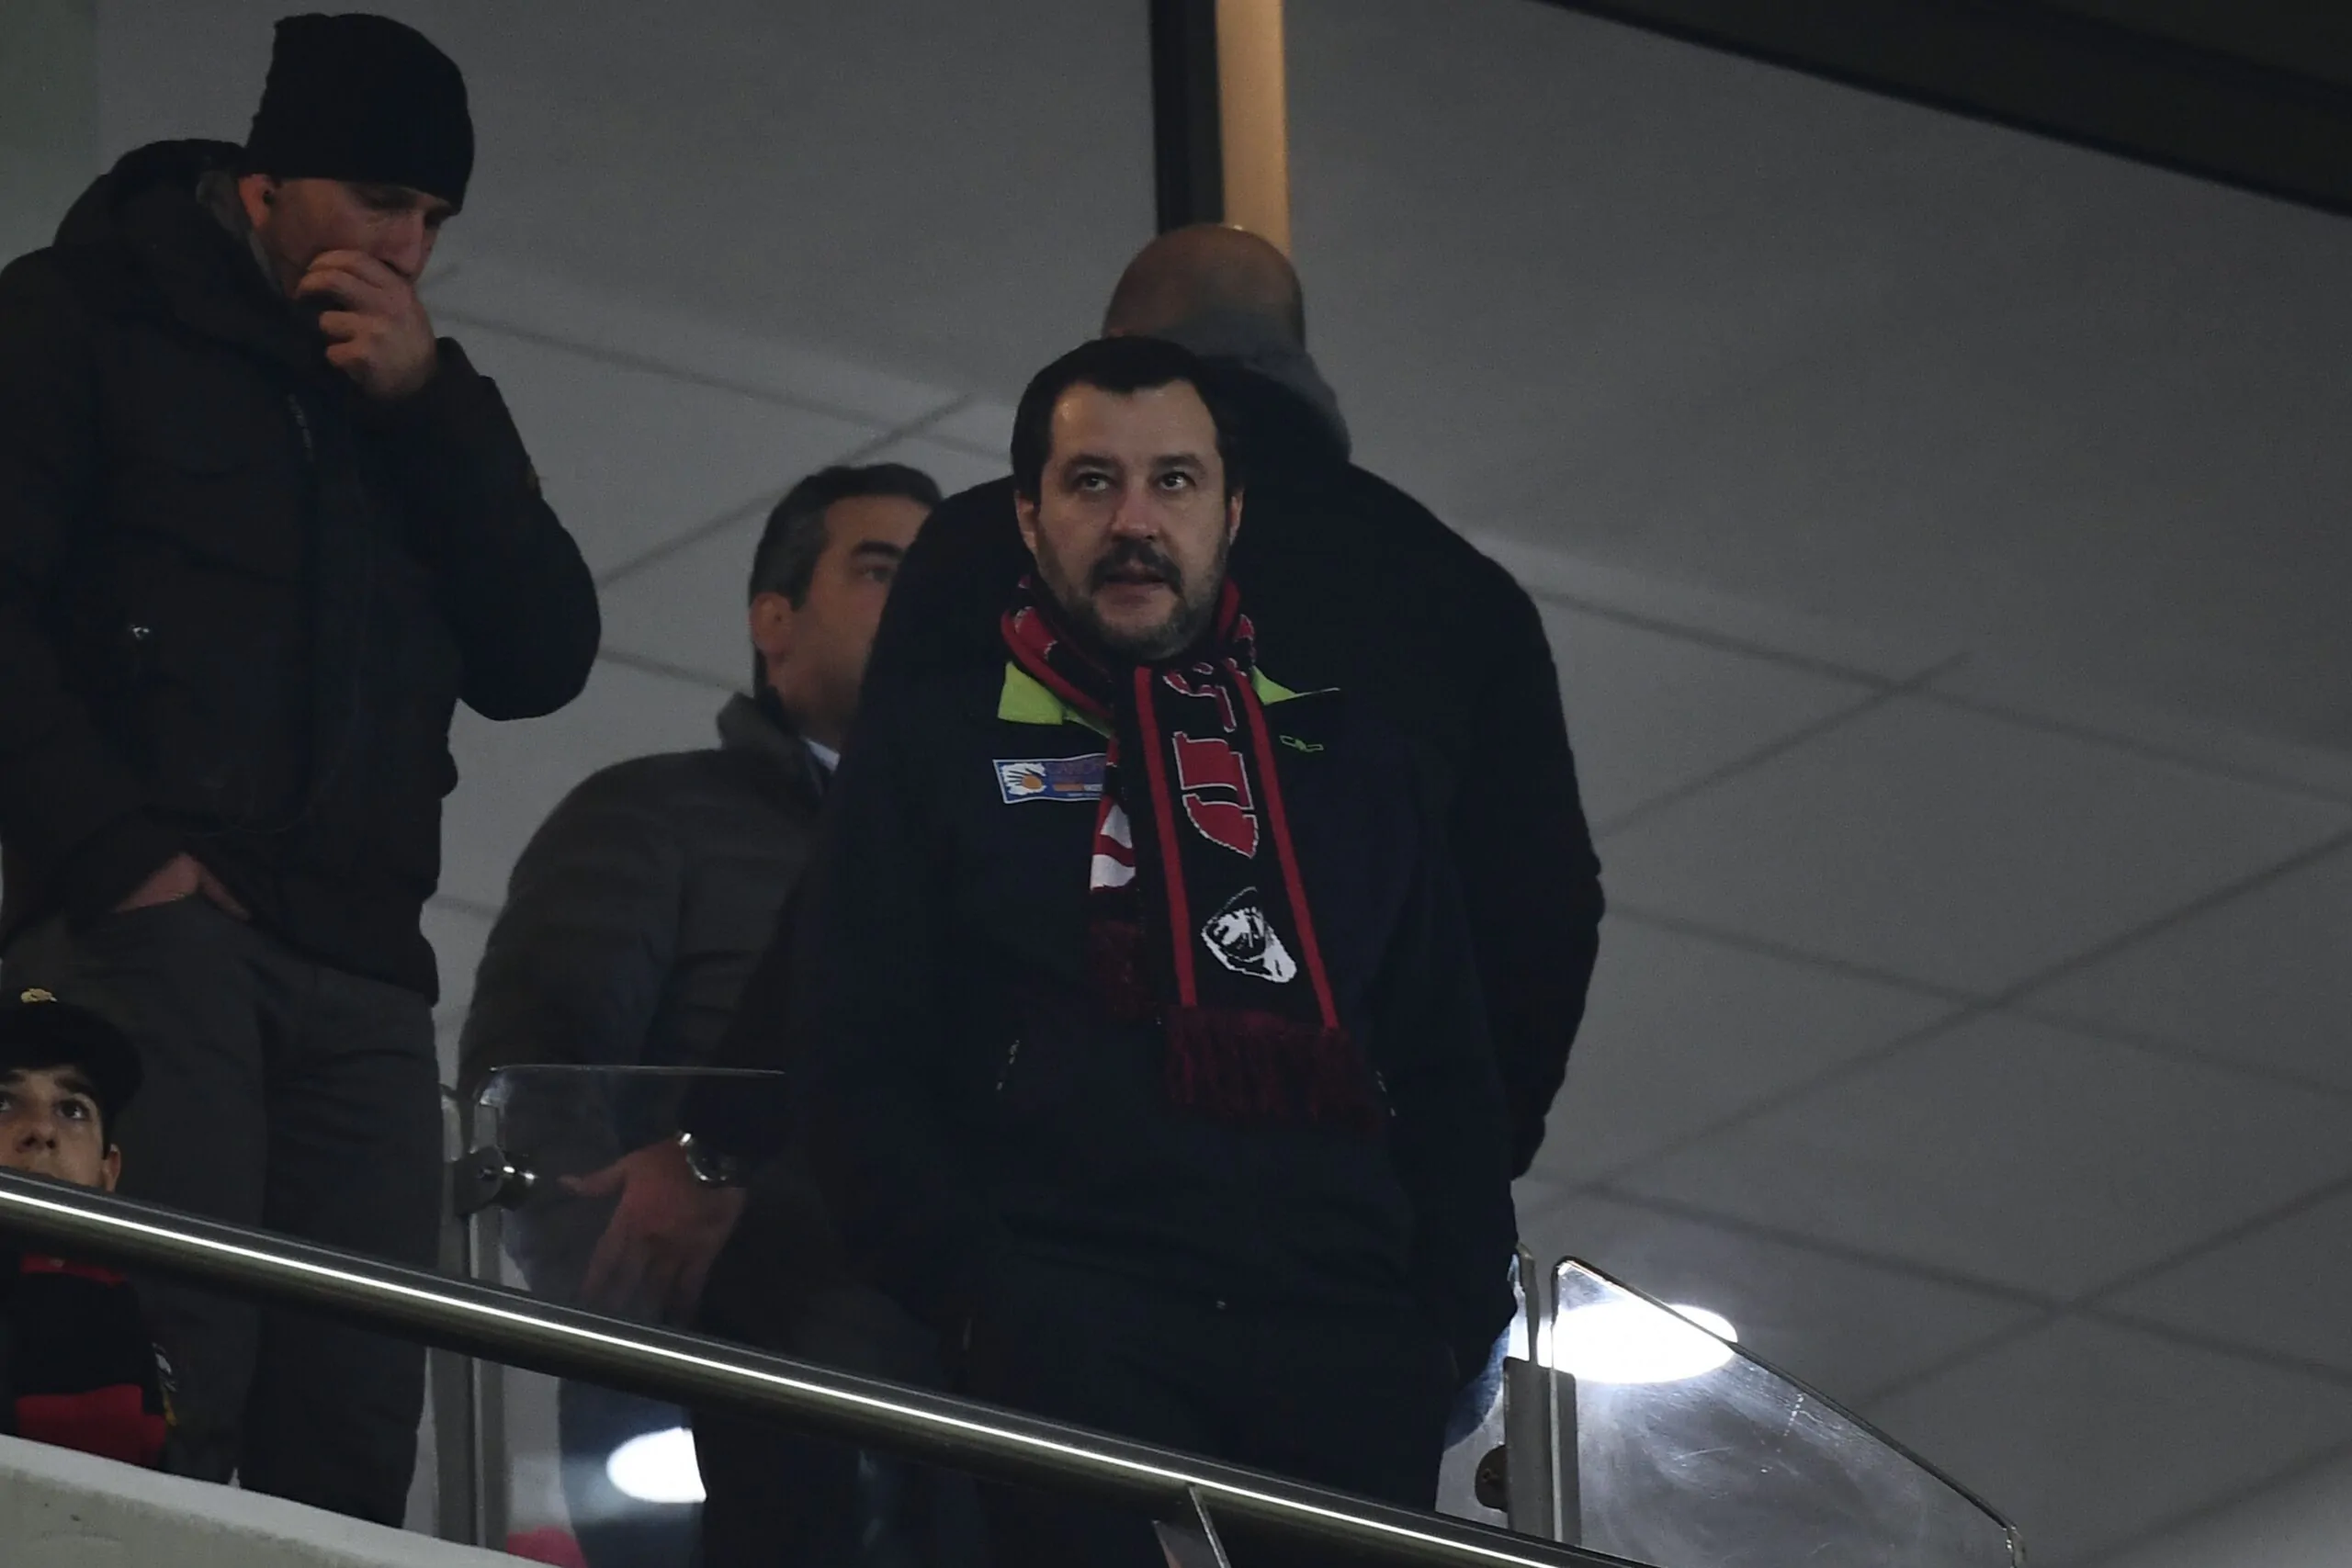 Duro attacco di Salvini al Milan: “Si può perdere, ma non la dignità. Vergognatevi!”